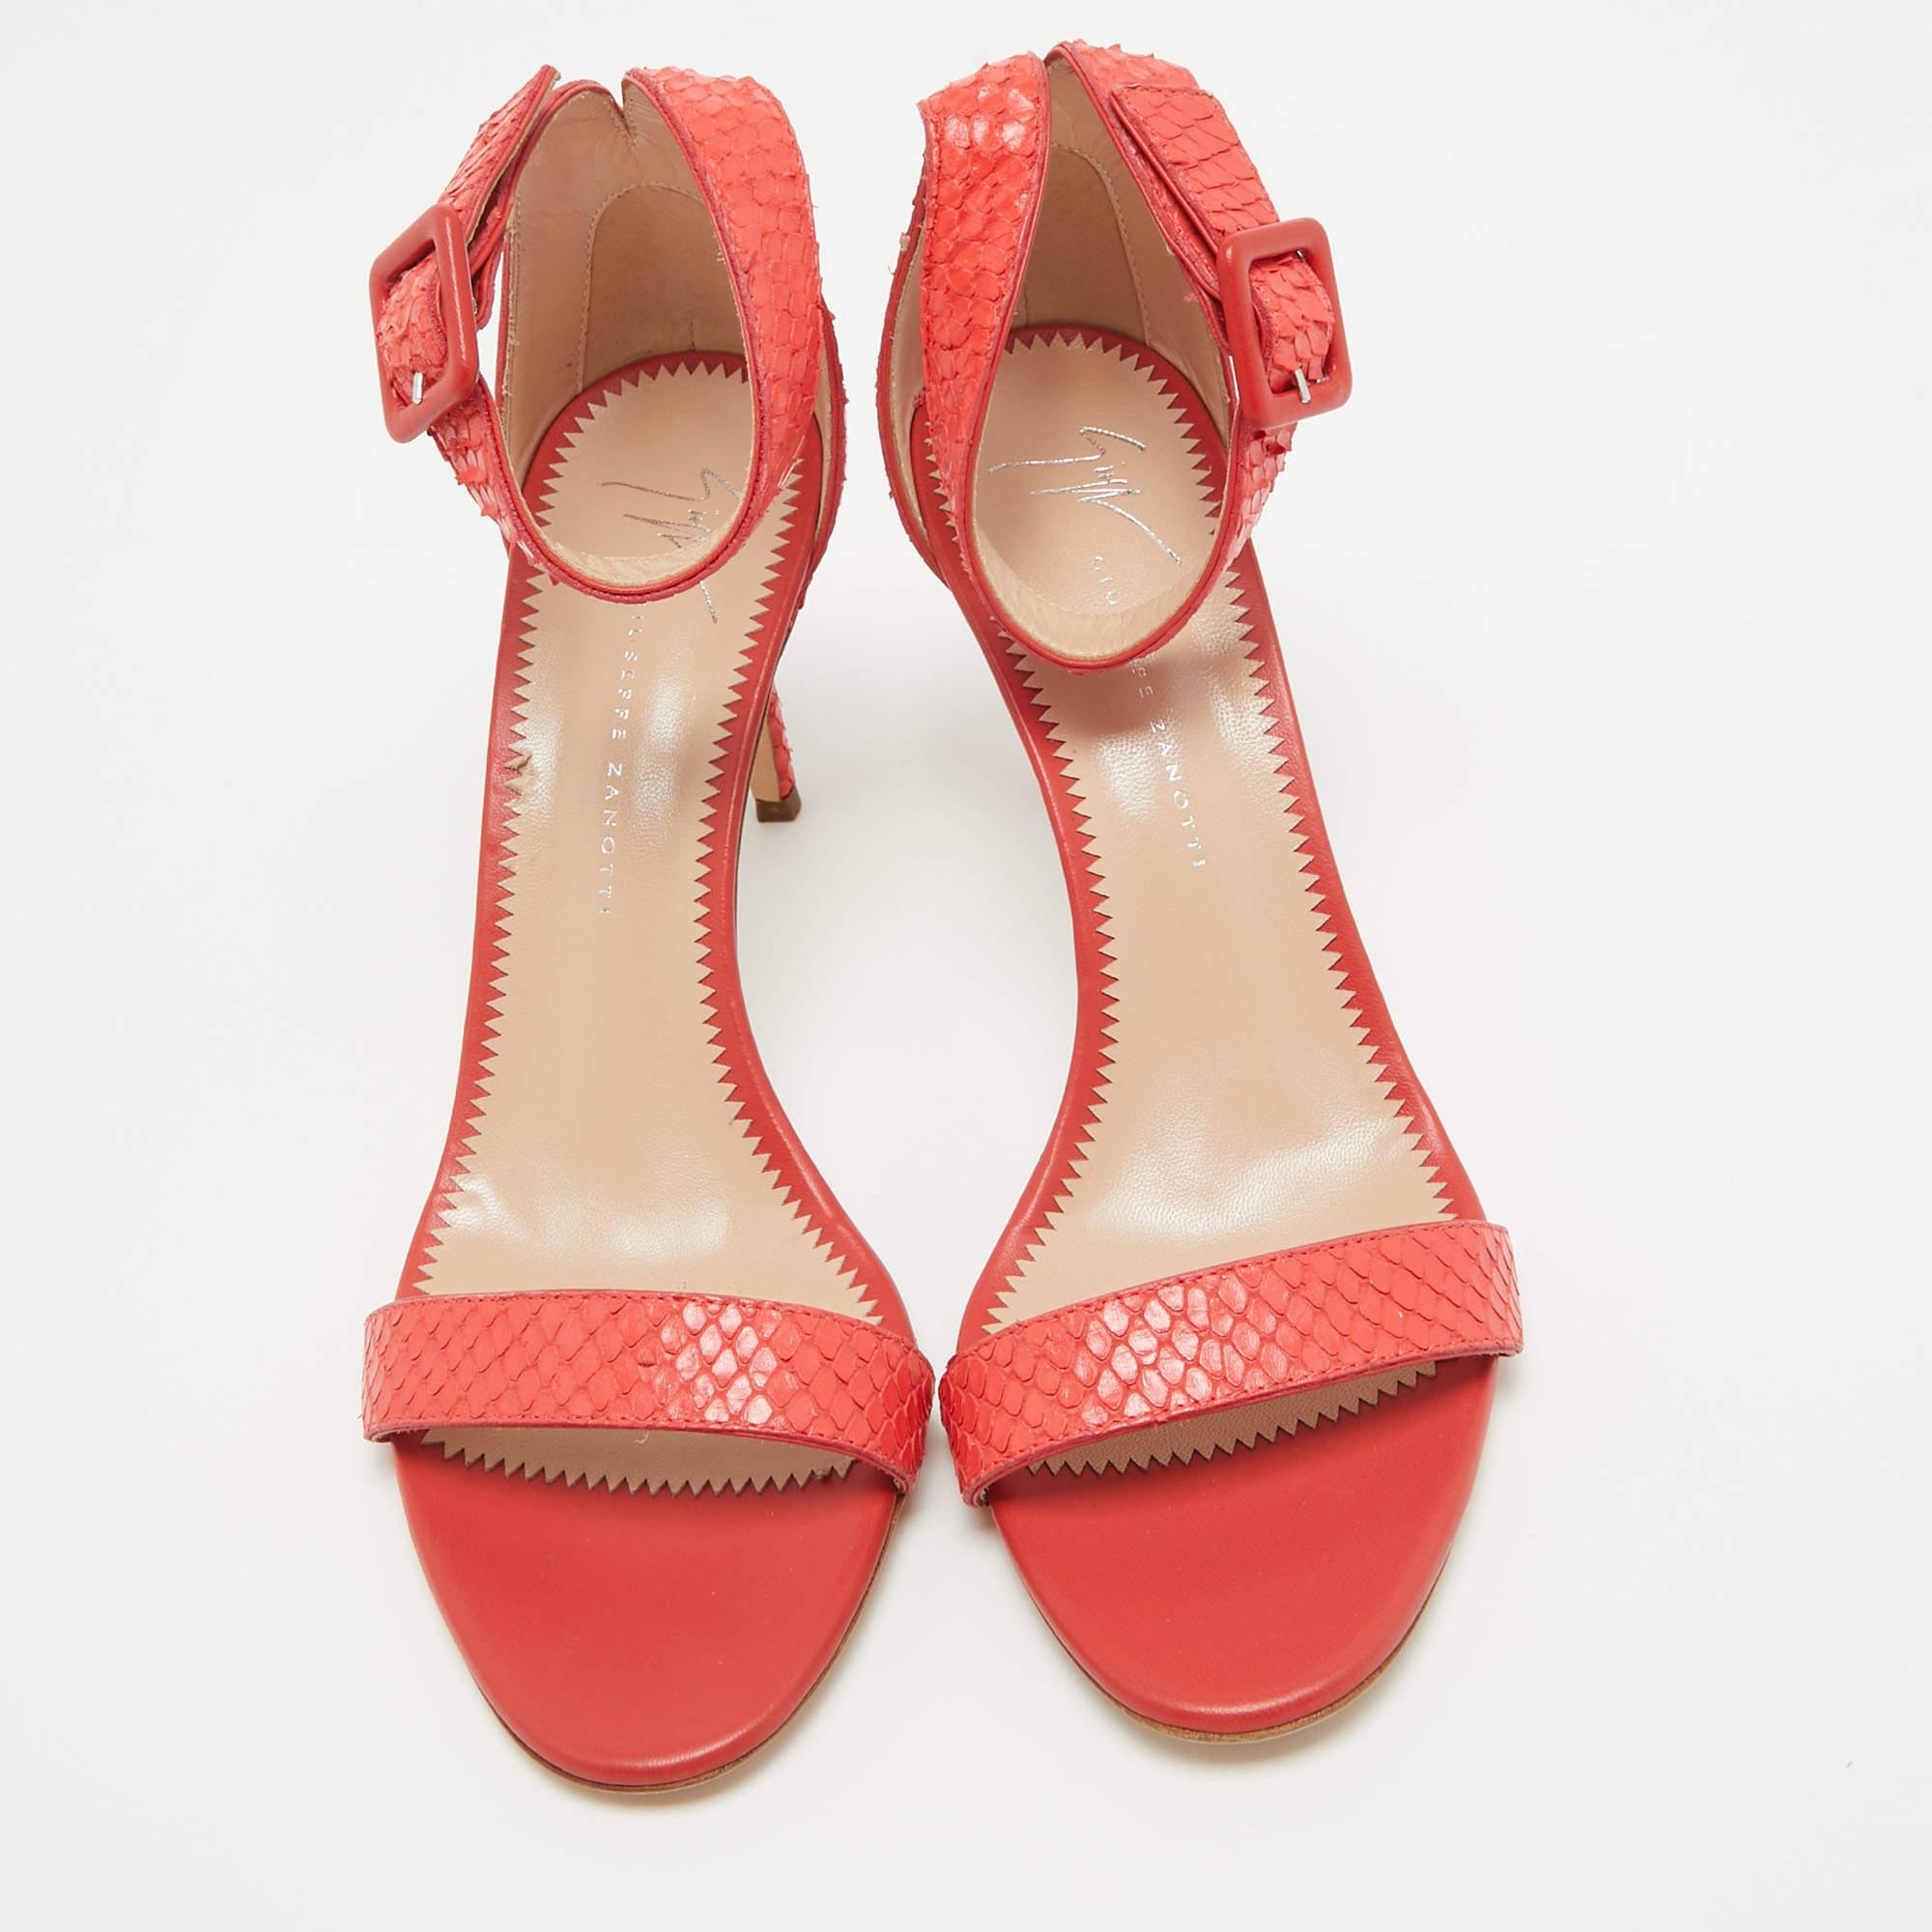 Ces sandales Giuseppe Zanotti sont fabriquées dans une teinte élégante. Conçues pour faire sensation, elles présentent une silhouette élégante et une belle coupe. Portez-les sous des jupes maxi pour une touche de glamour, ou laissez-les briller avec